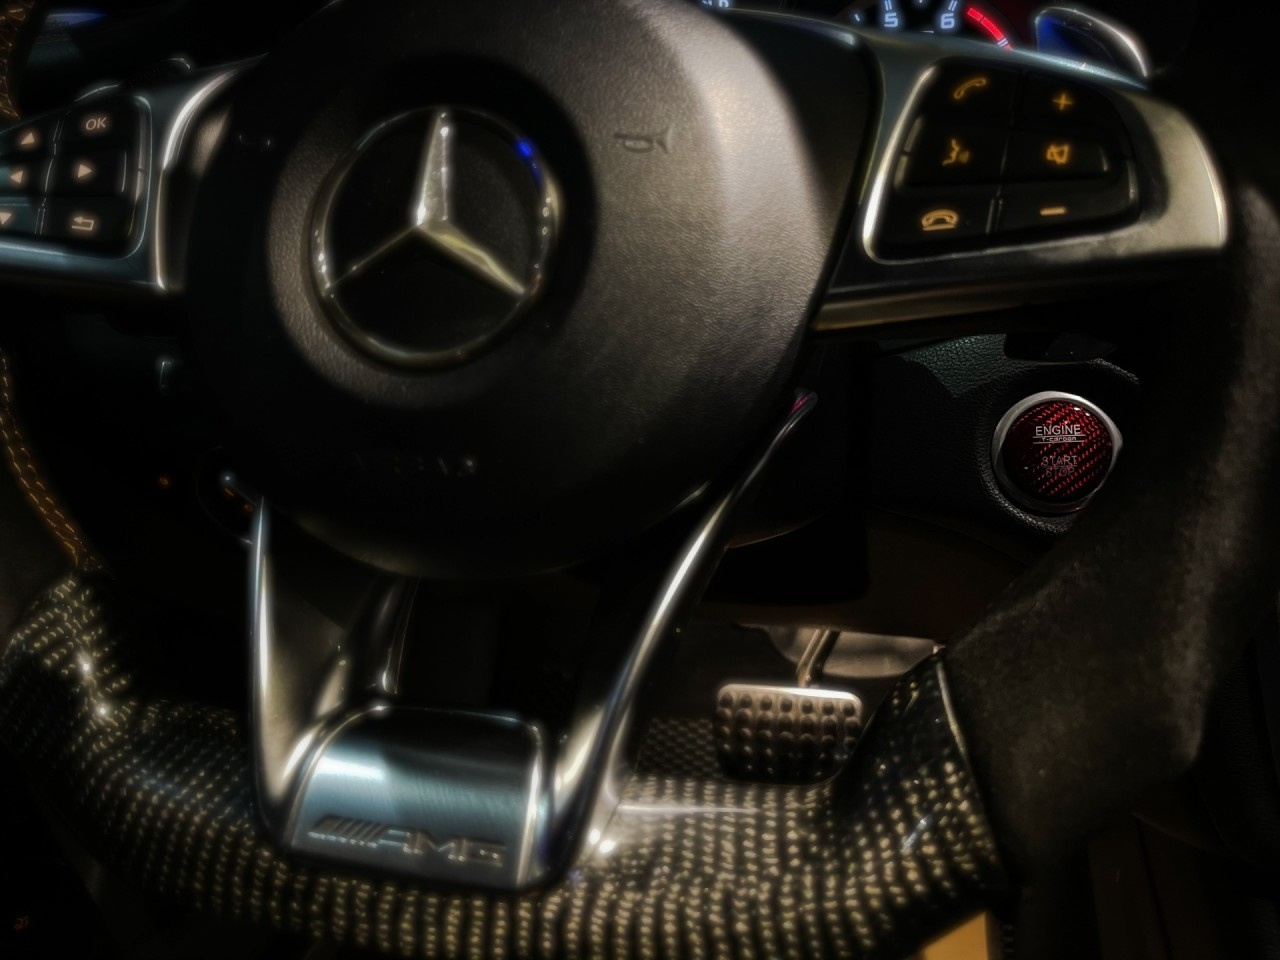 'Hàng độc' Mercedes Benz CLA 45 AMG Shooting Brake lên sàn với giá 1,7 tỷ đồng